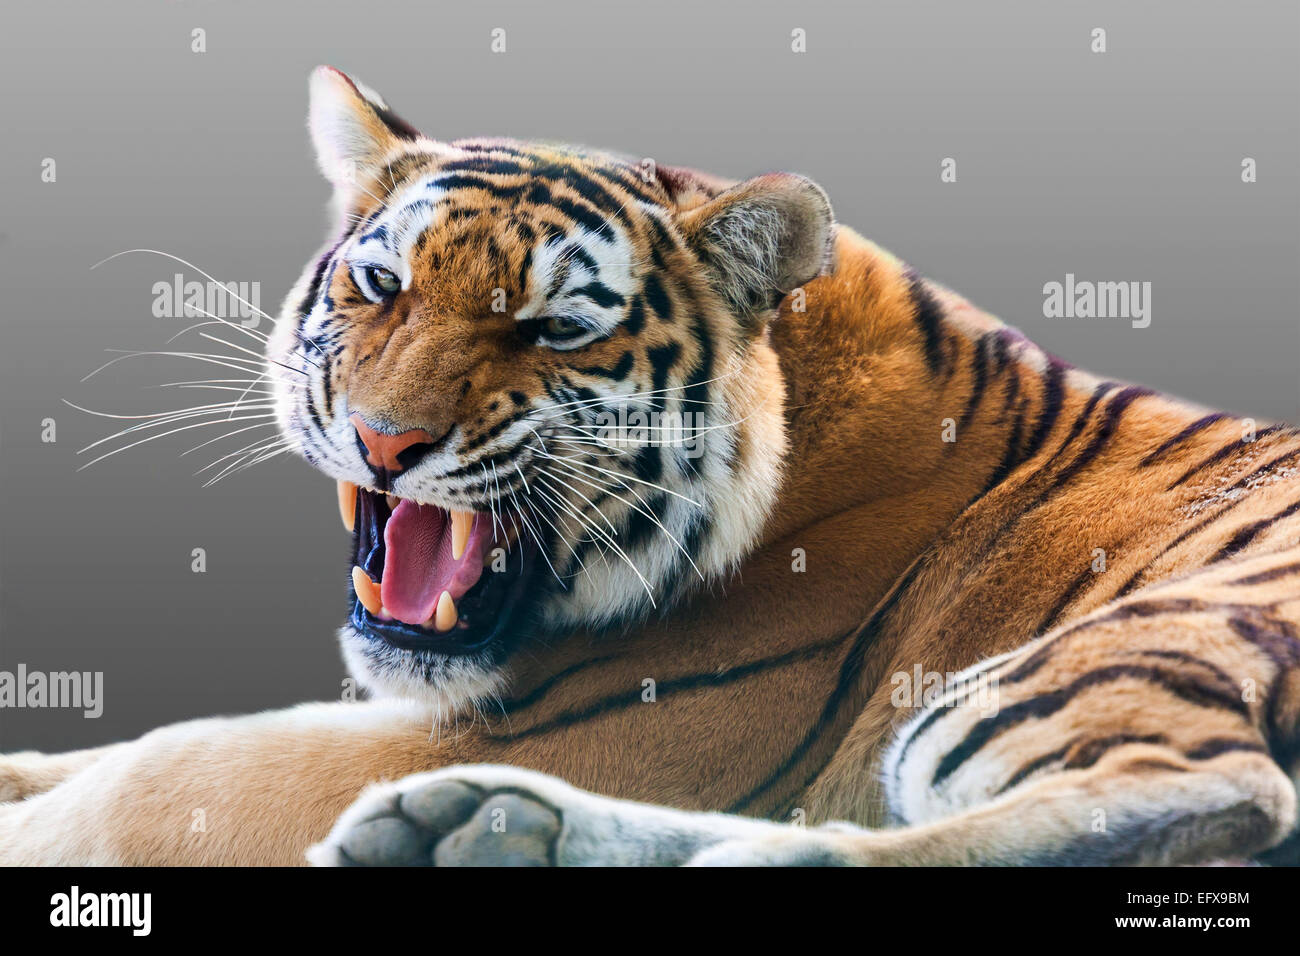 Böse knurrende Tiger auf einem grauen Hintergrund Stockfotografie - Alamy